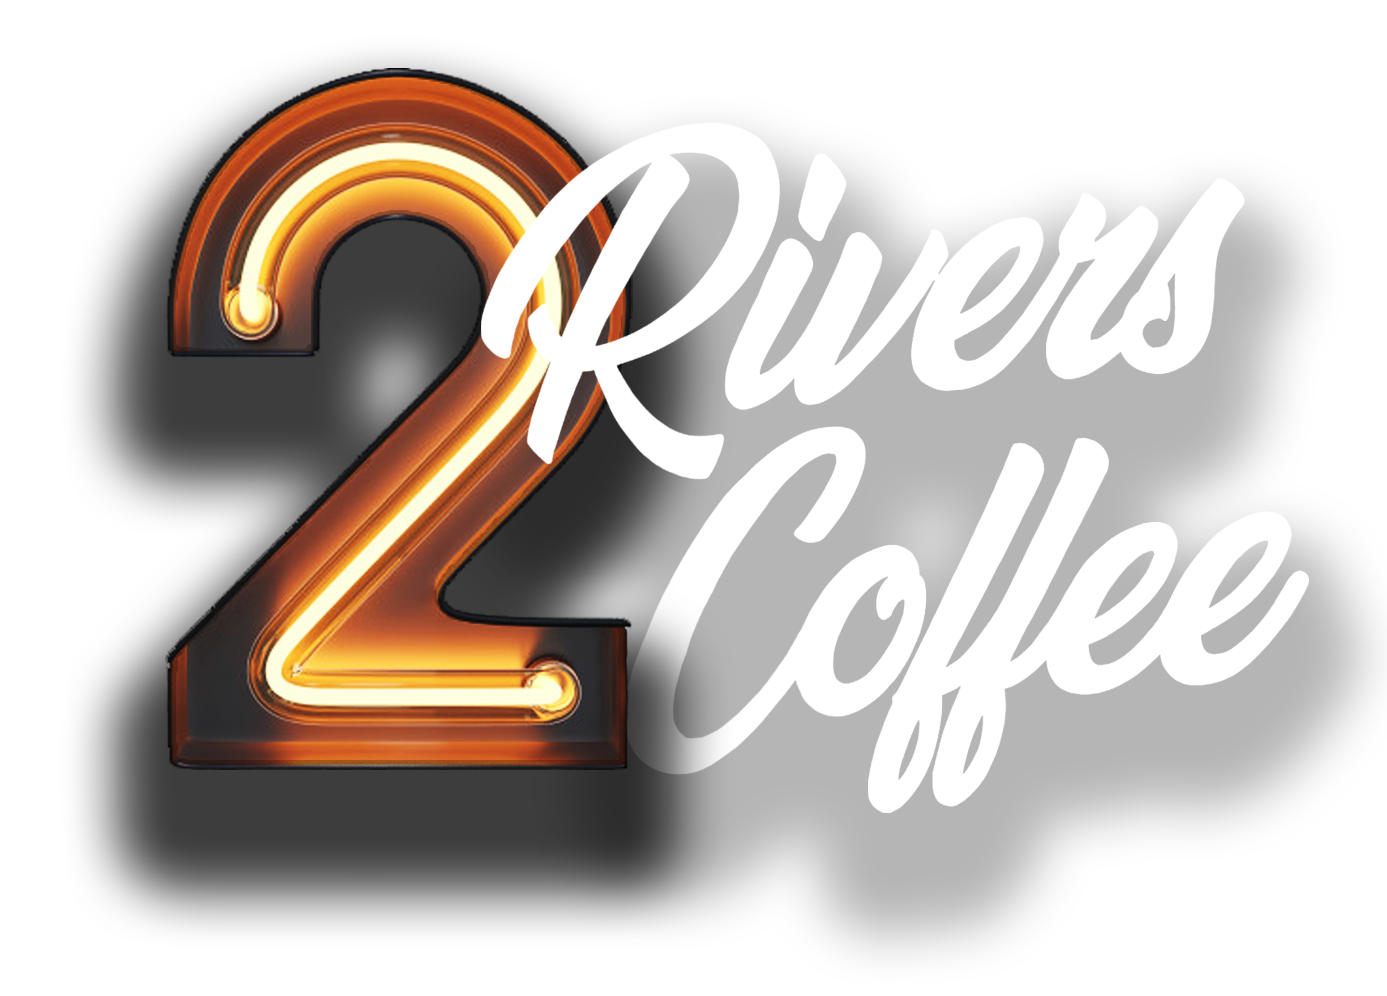 2 rivers coffee